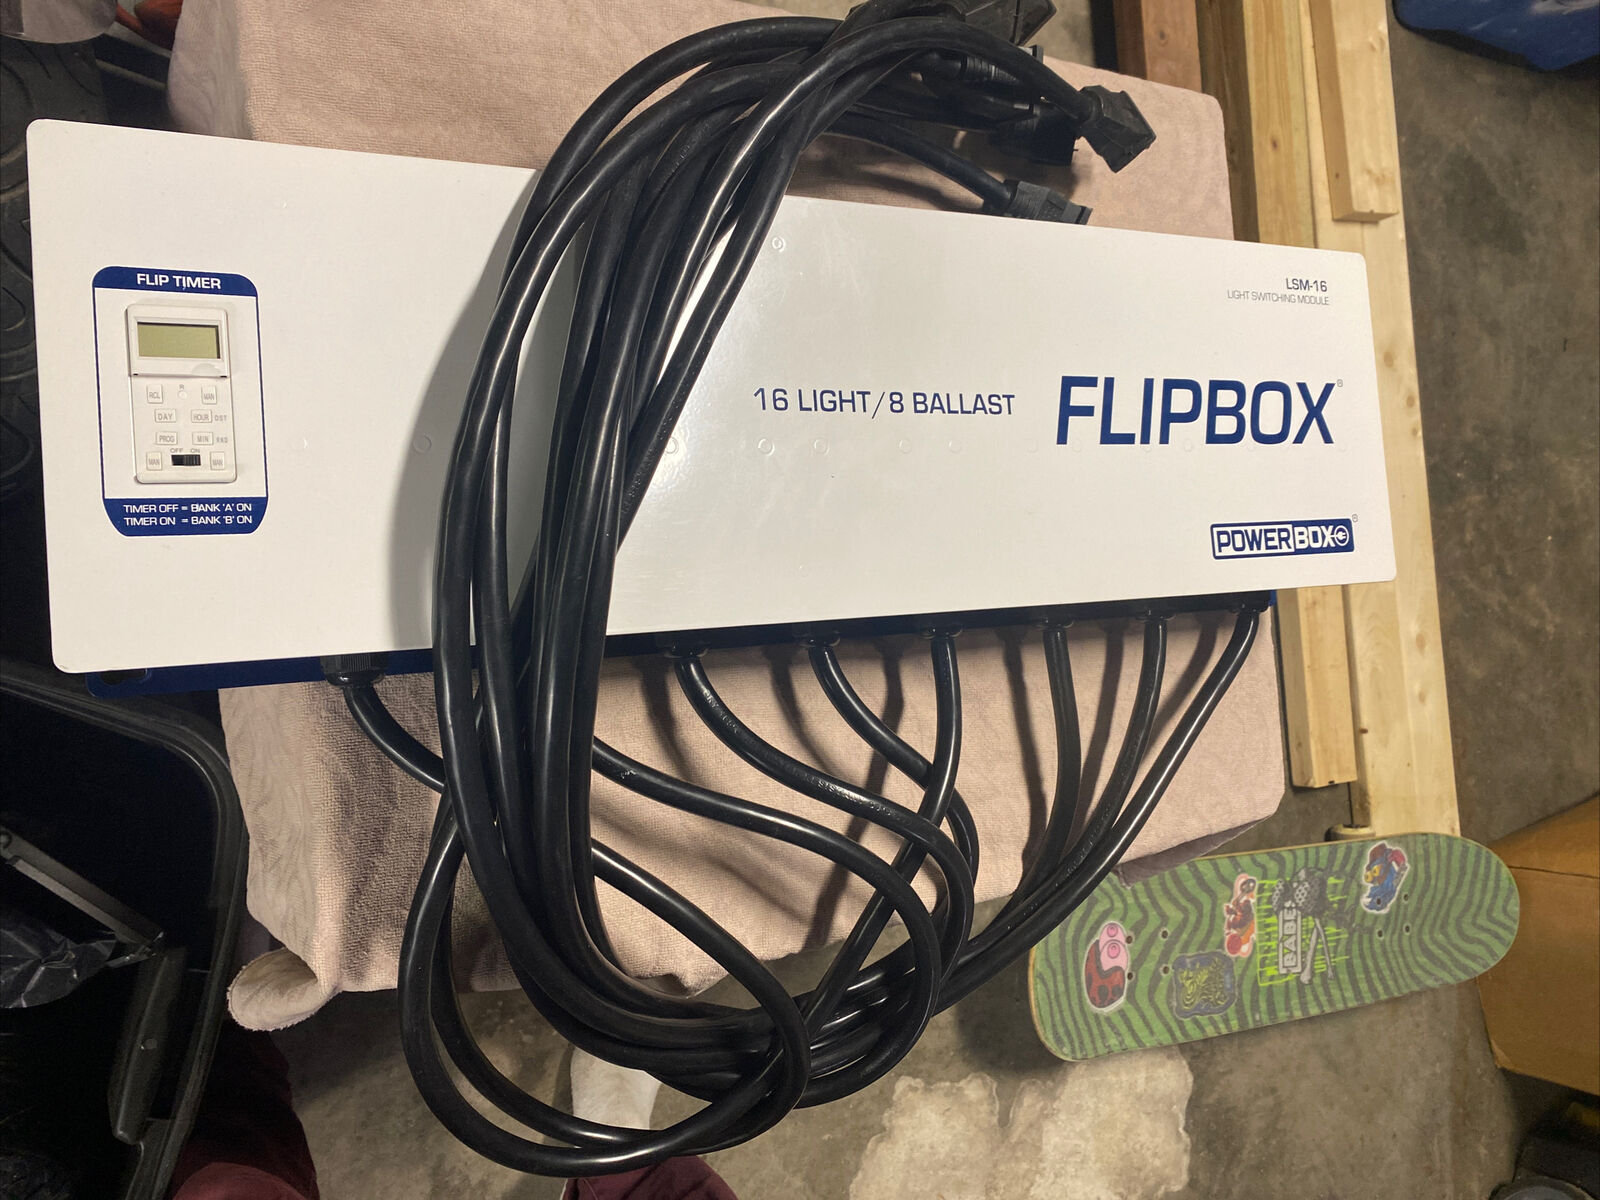 Power Box LSM-16 FlipBox 16 Ballast Flipper Light Flipper Grow Light Switching